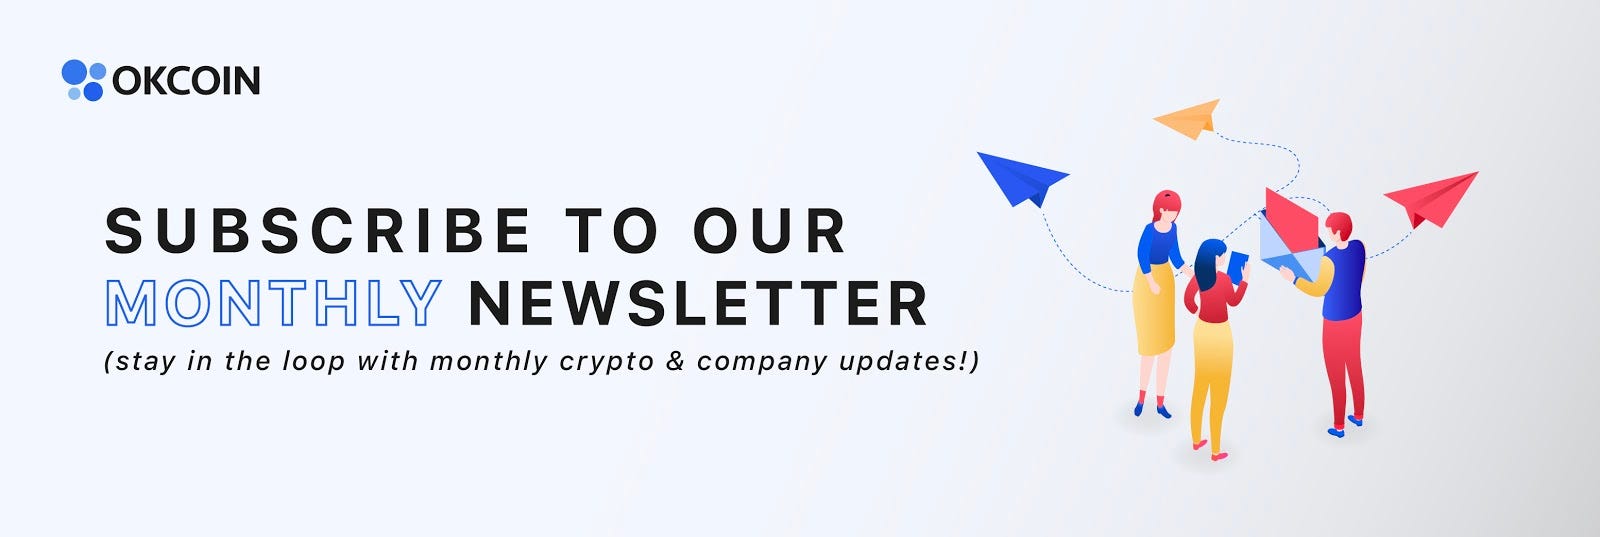 Sign-up for OKCoin's newletter